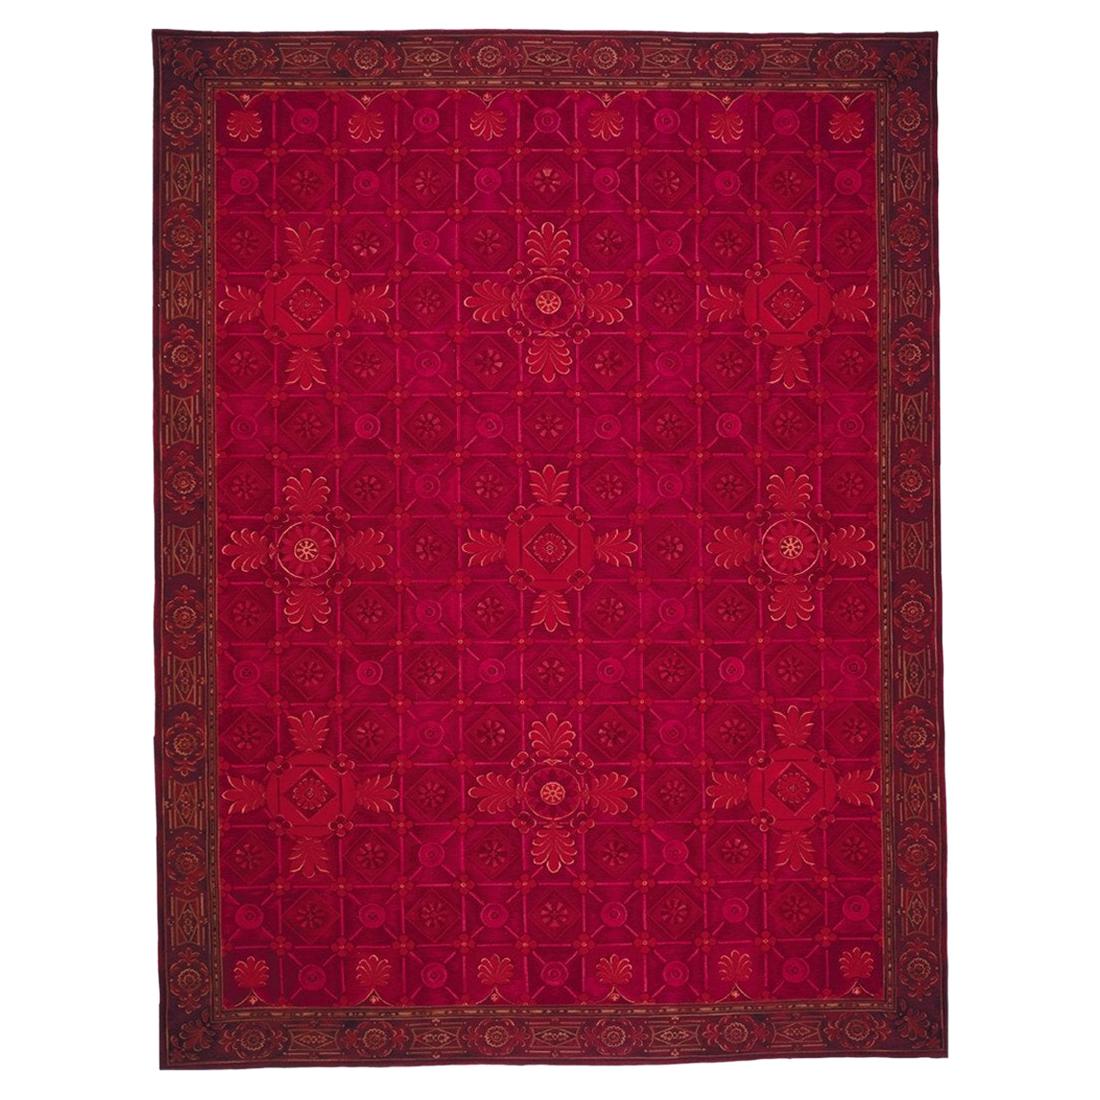 Handgewebter Teppich aus Wolle in Übergröße  14'2 x 19'4 Zoll